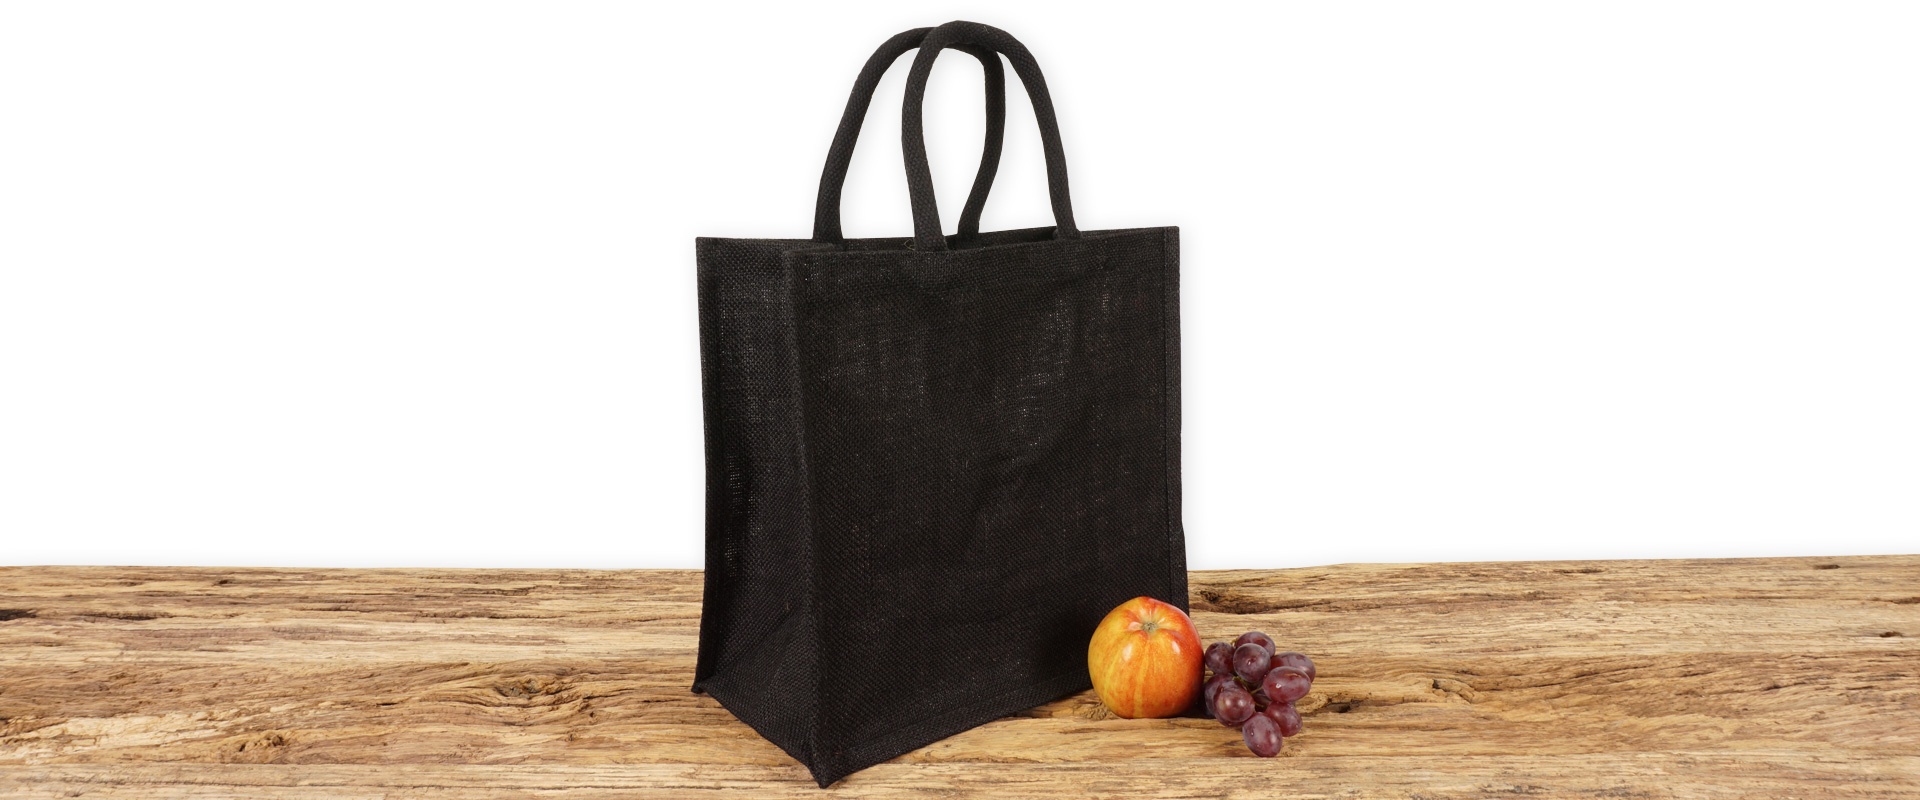 Einkaufstasche aus Jute zum Bedrucken, schwarz mit Seiten-Bodenfalte, klein und mit kurzen Tragegriffen auf Holz.